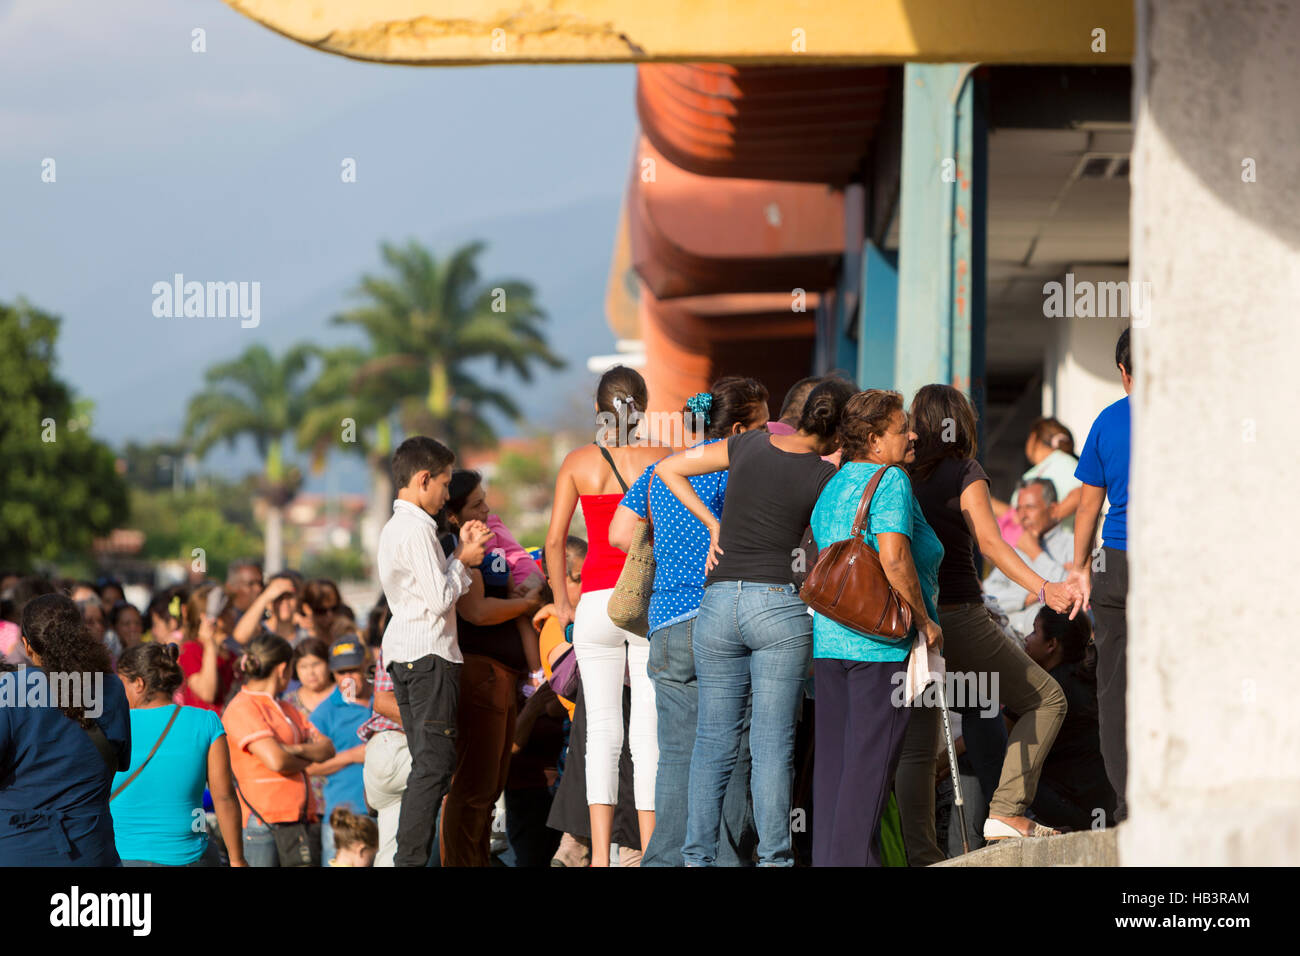 Groupe de personnes attendent en ligne à un supermarché de Mérida, Venezuela. Banque D'Images